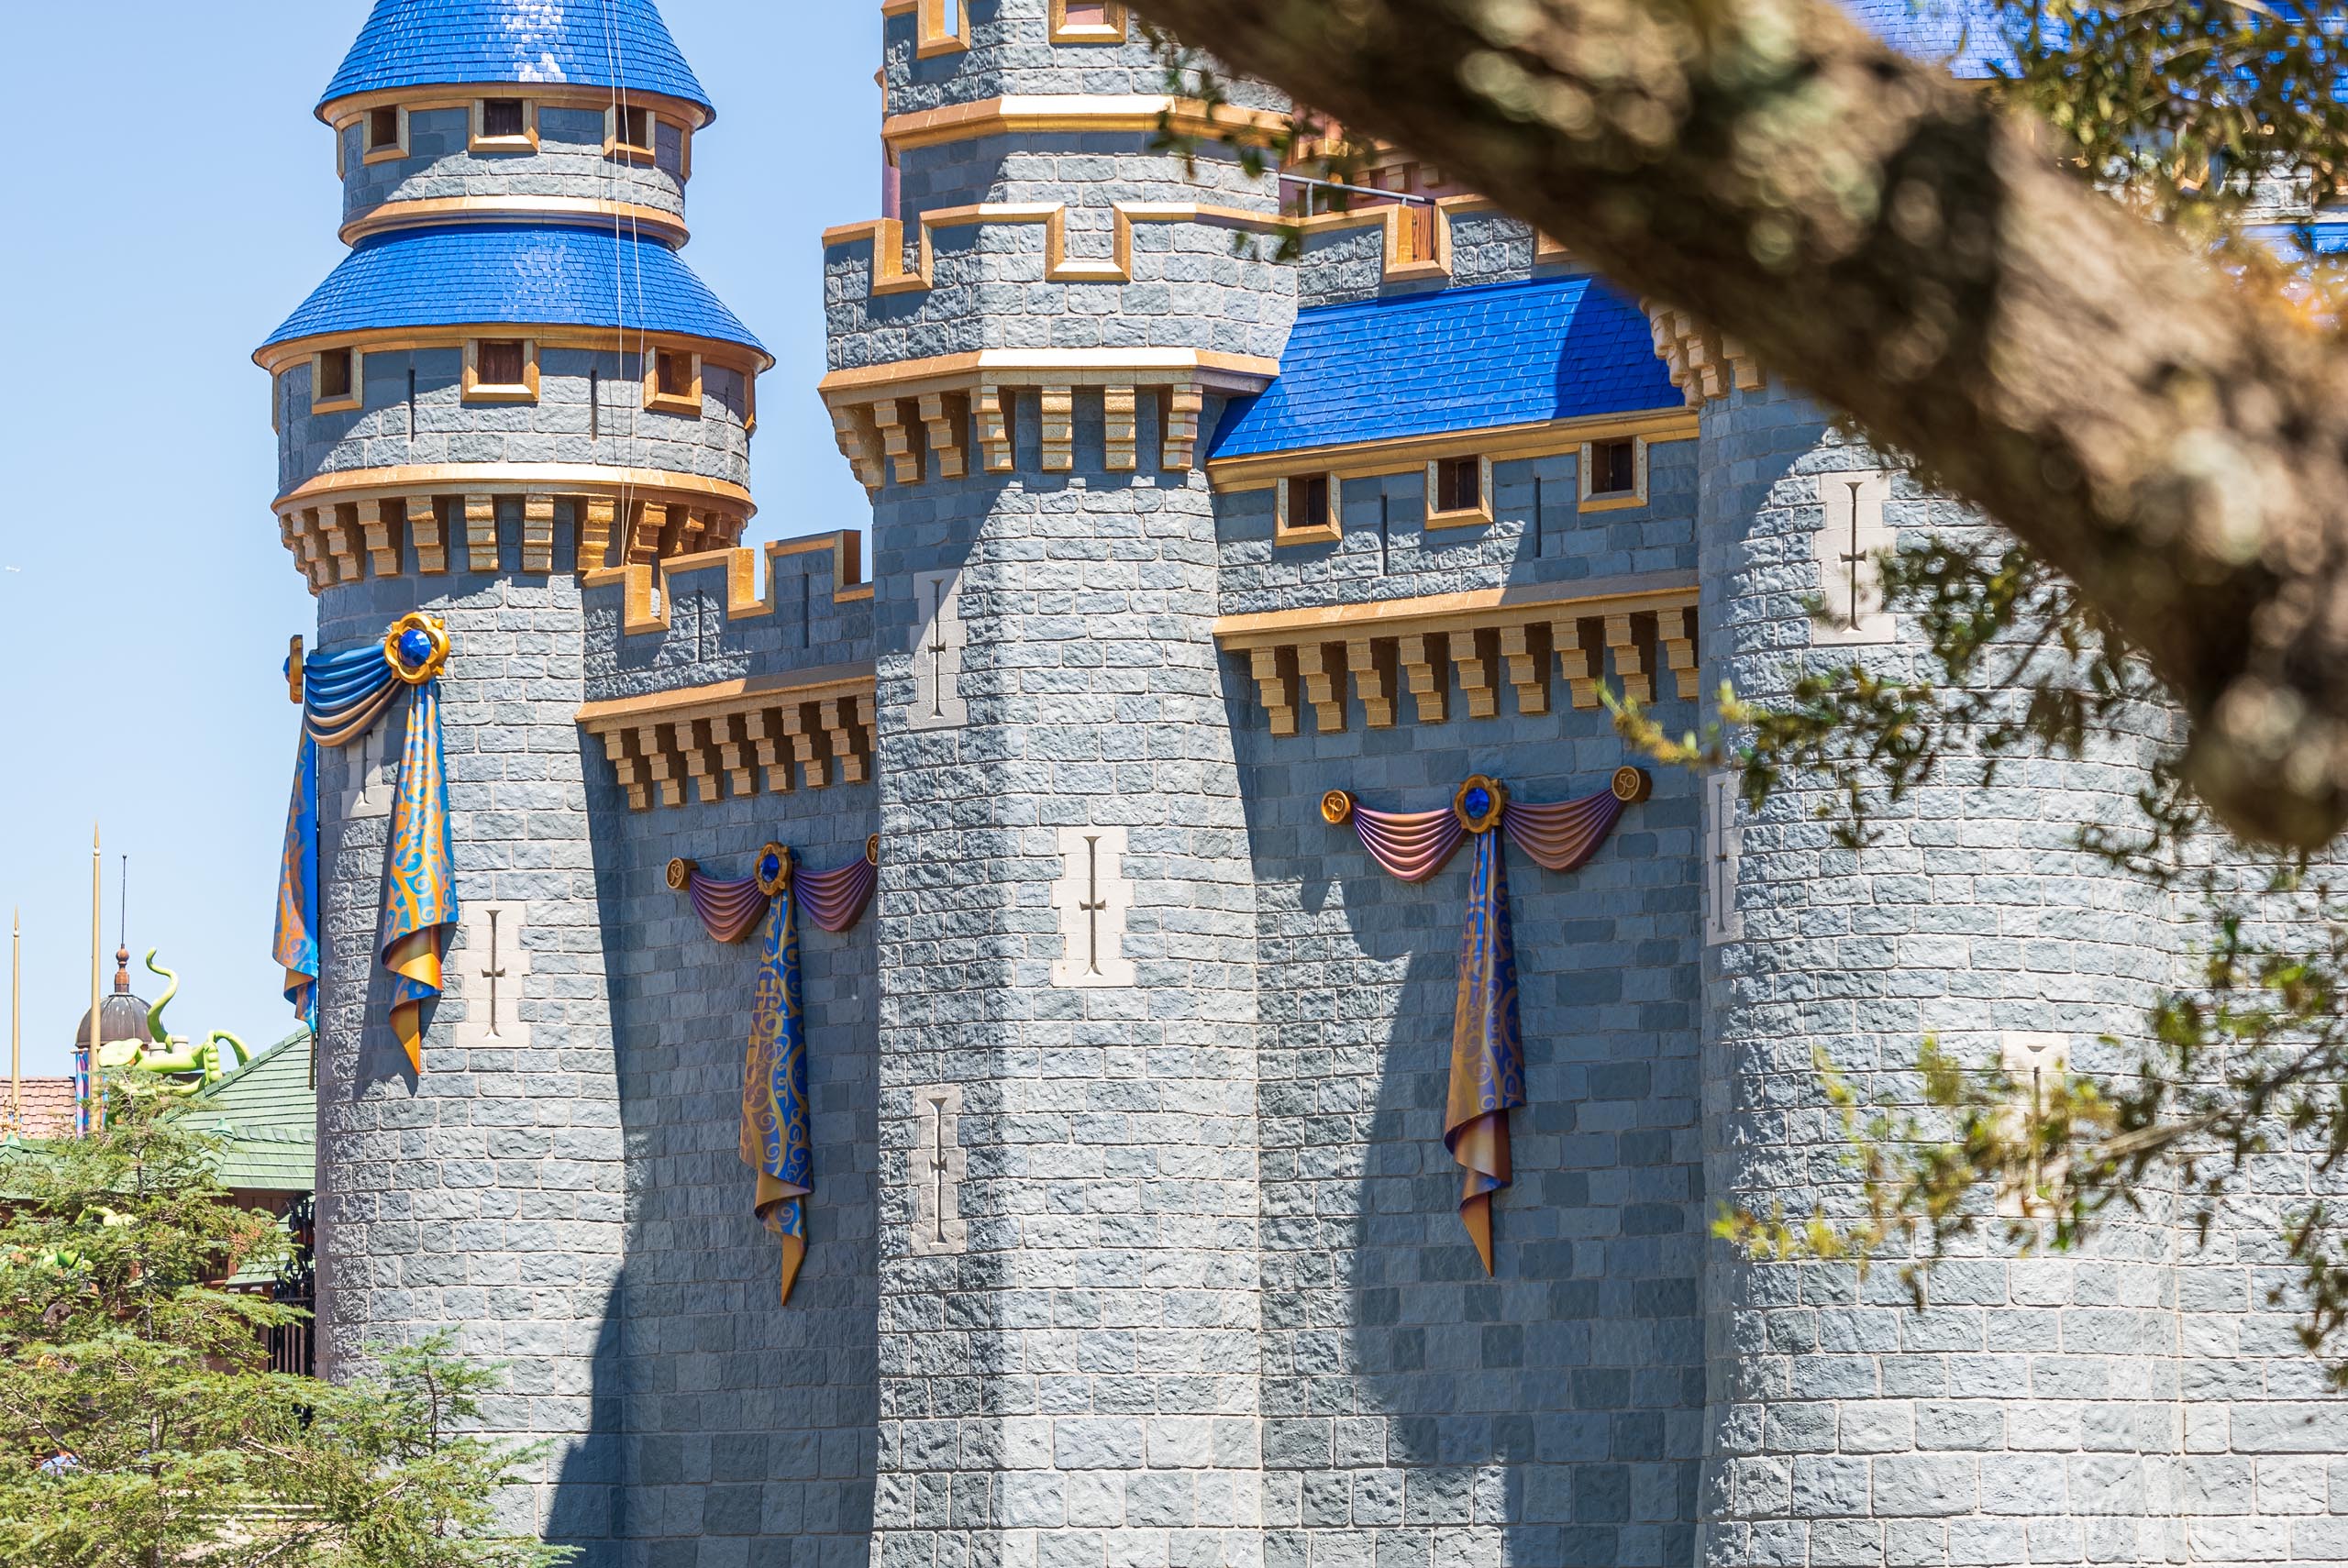 50th anniversary Cinderella Castle additions - March 19 2021